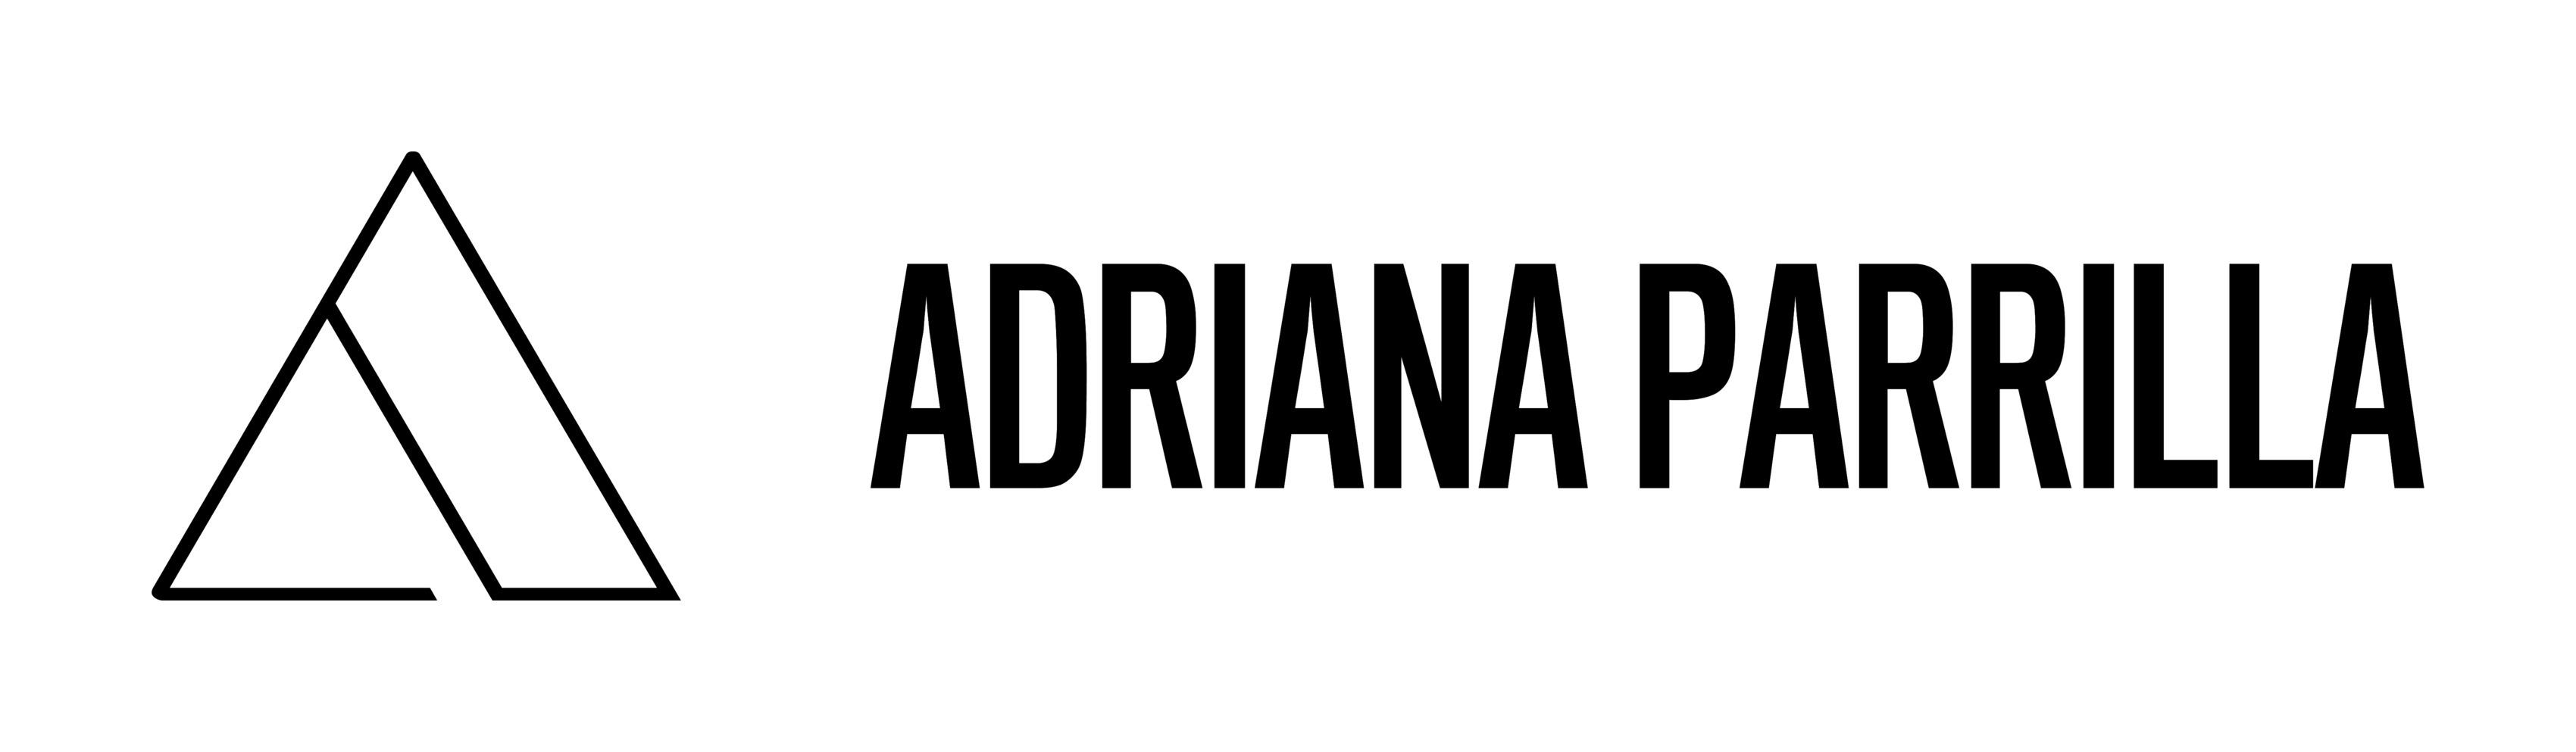 Adriana Parrilla | Images